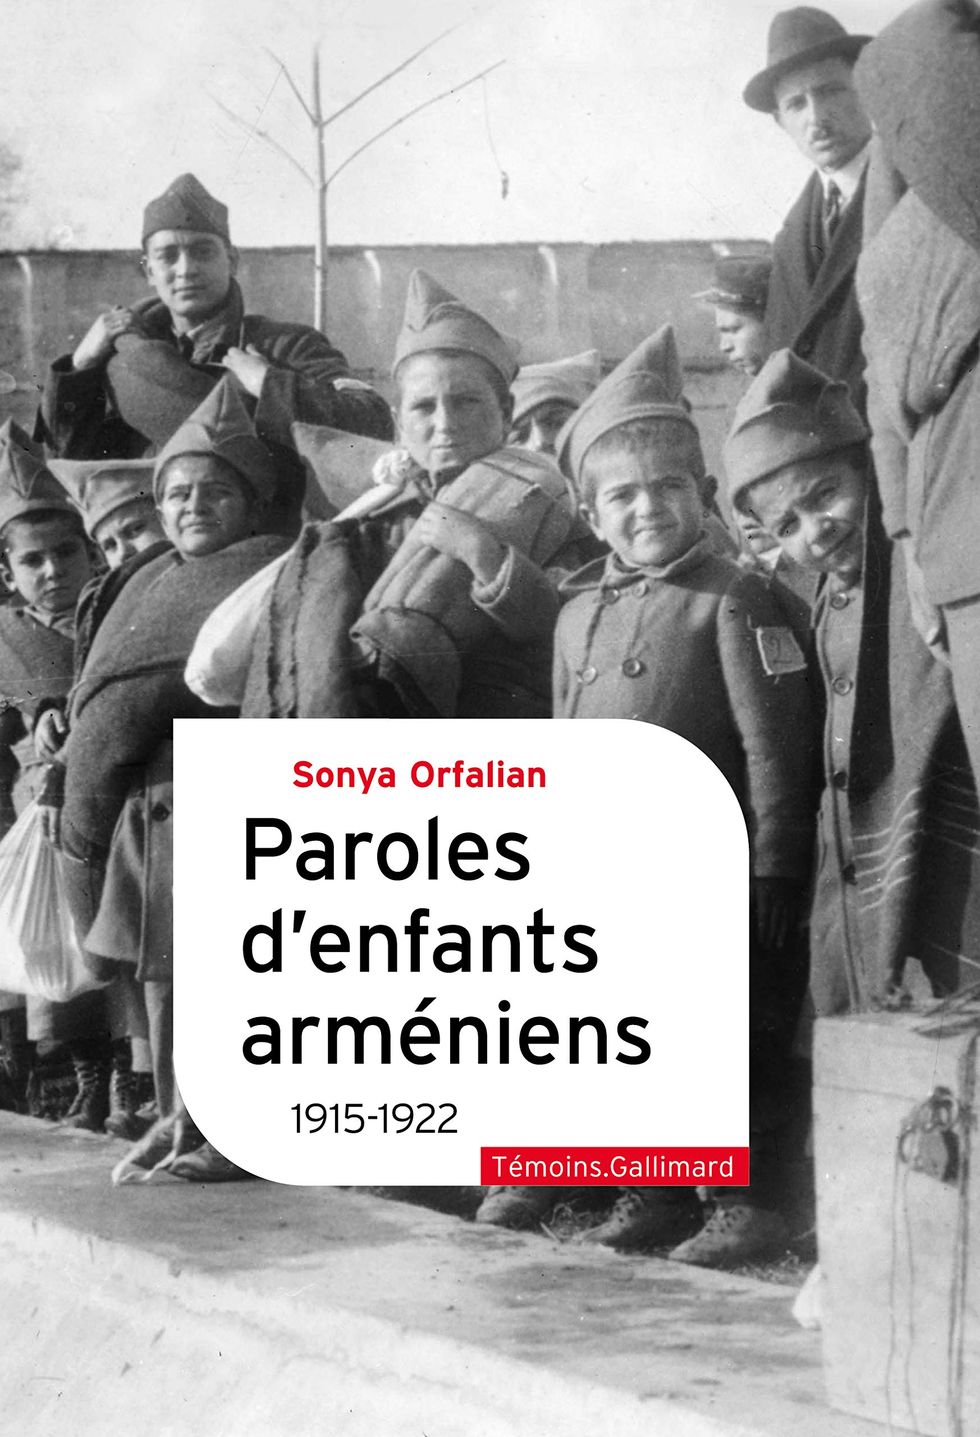 Paroles d'enfants arméniens: 1915-1922